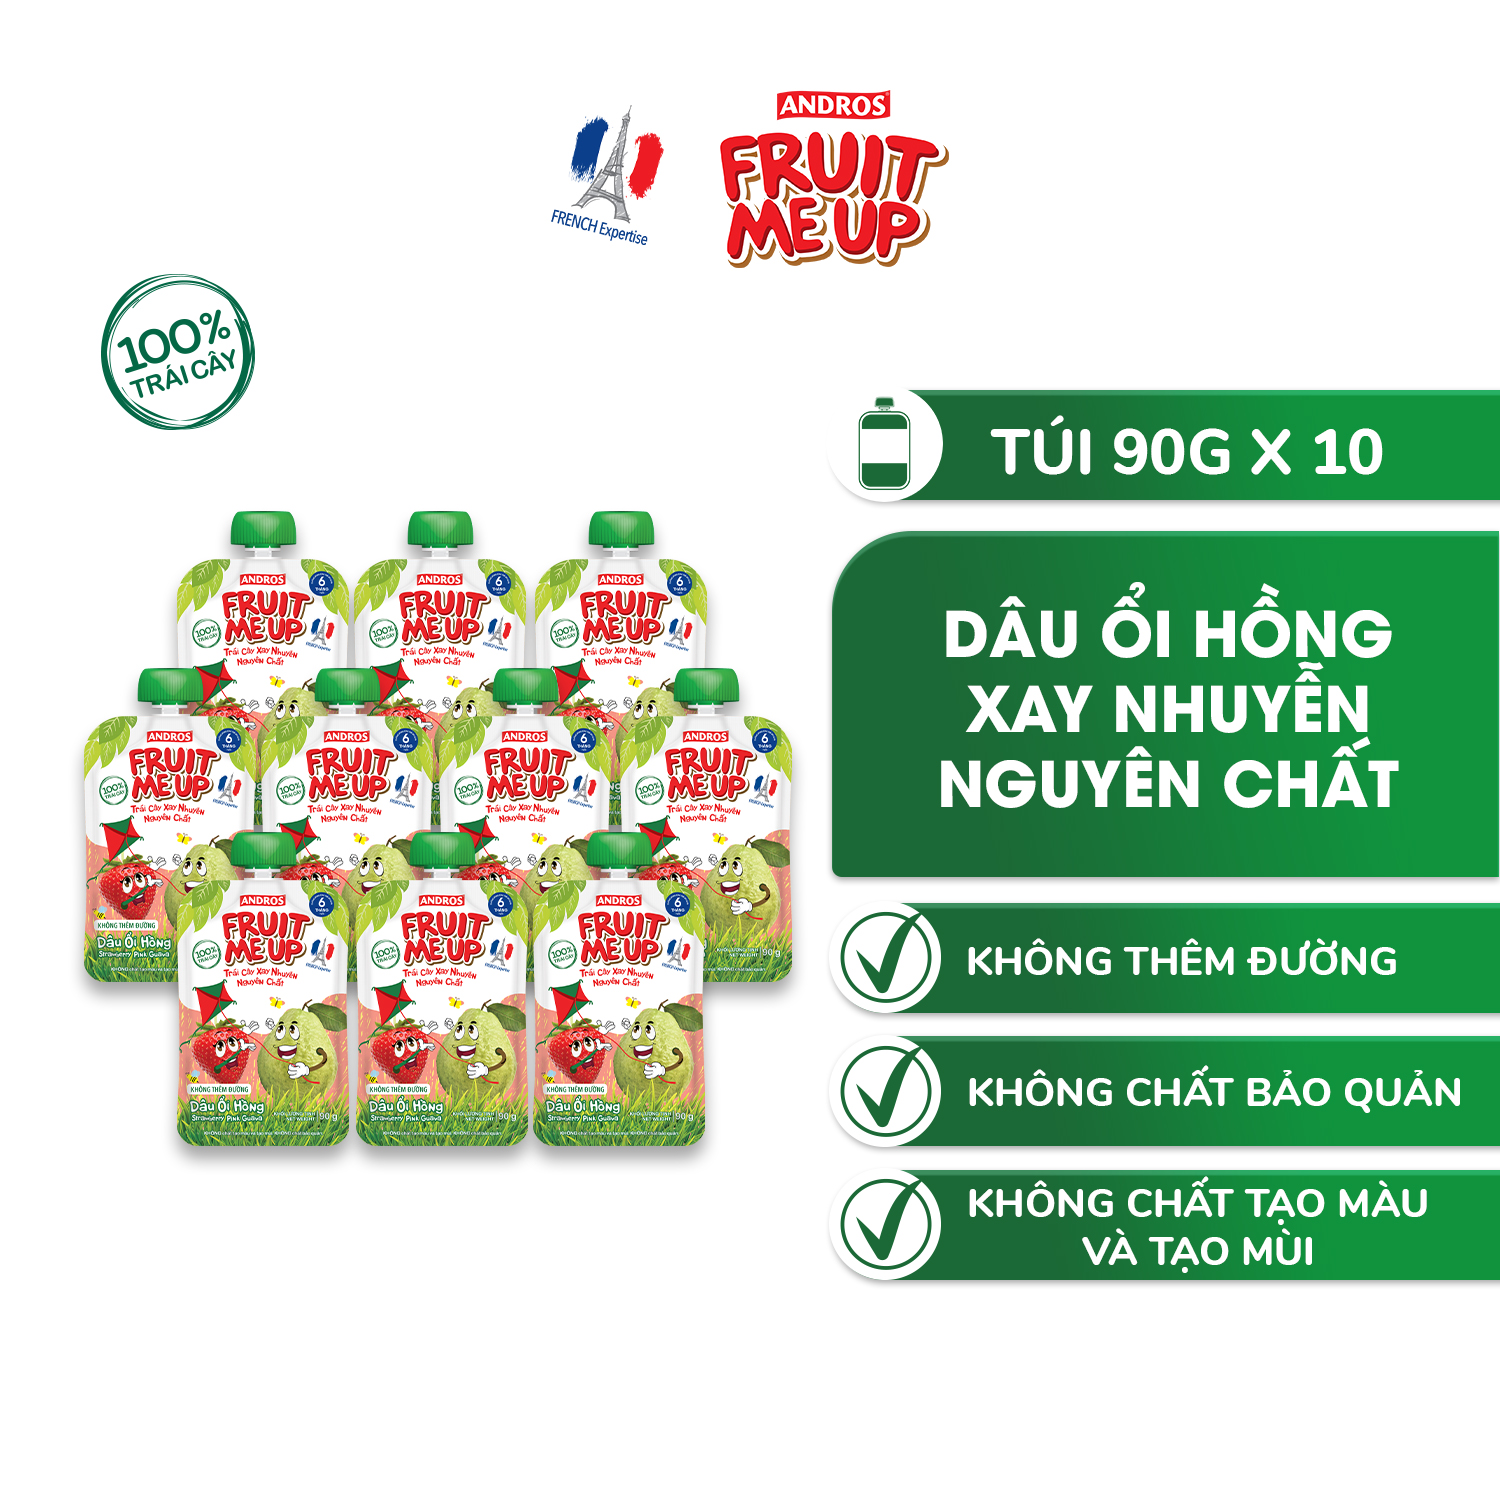 Combo 10 Túi Trái Cây Xay Nhuyễn Vị Dâu Ổi hồng - 100% trái cây thật